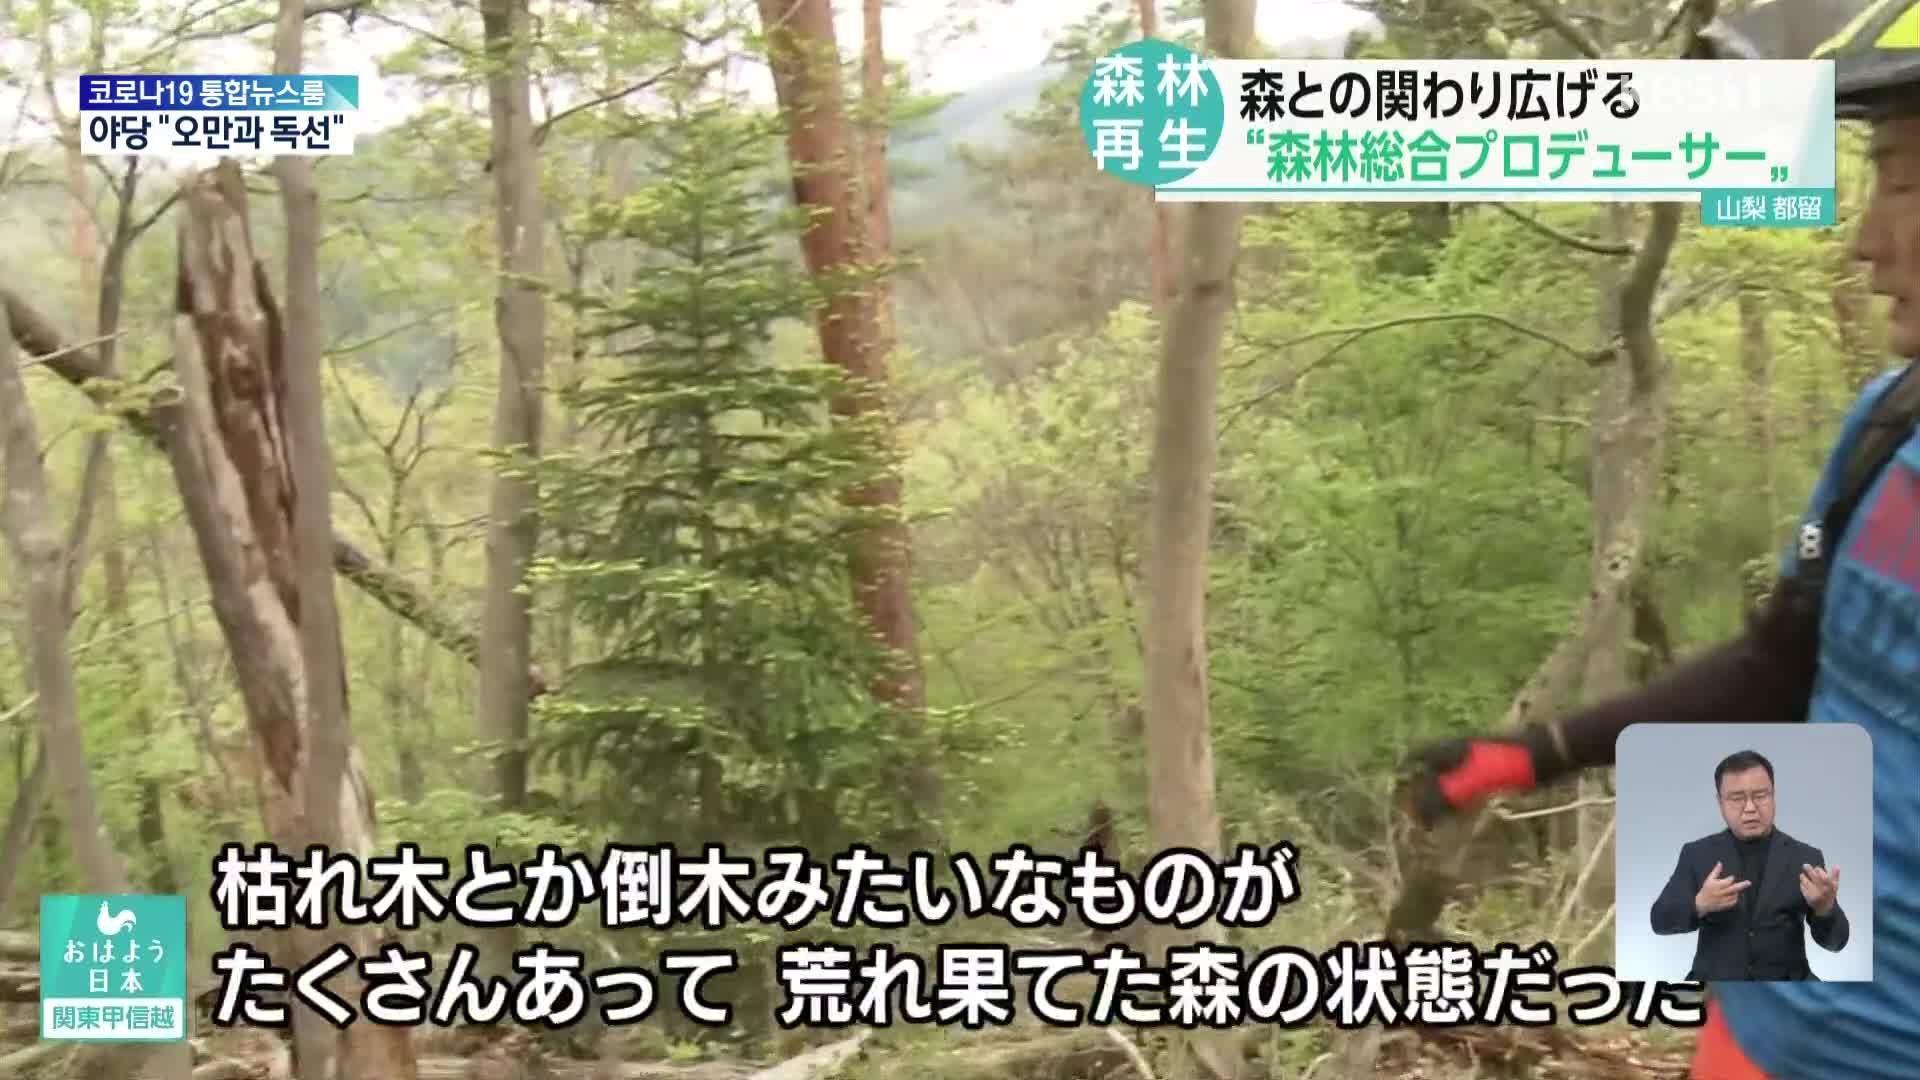 일본, 황폐한 숲을 다시 살려라!